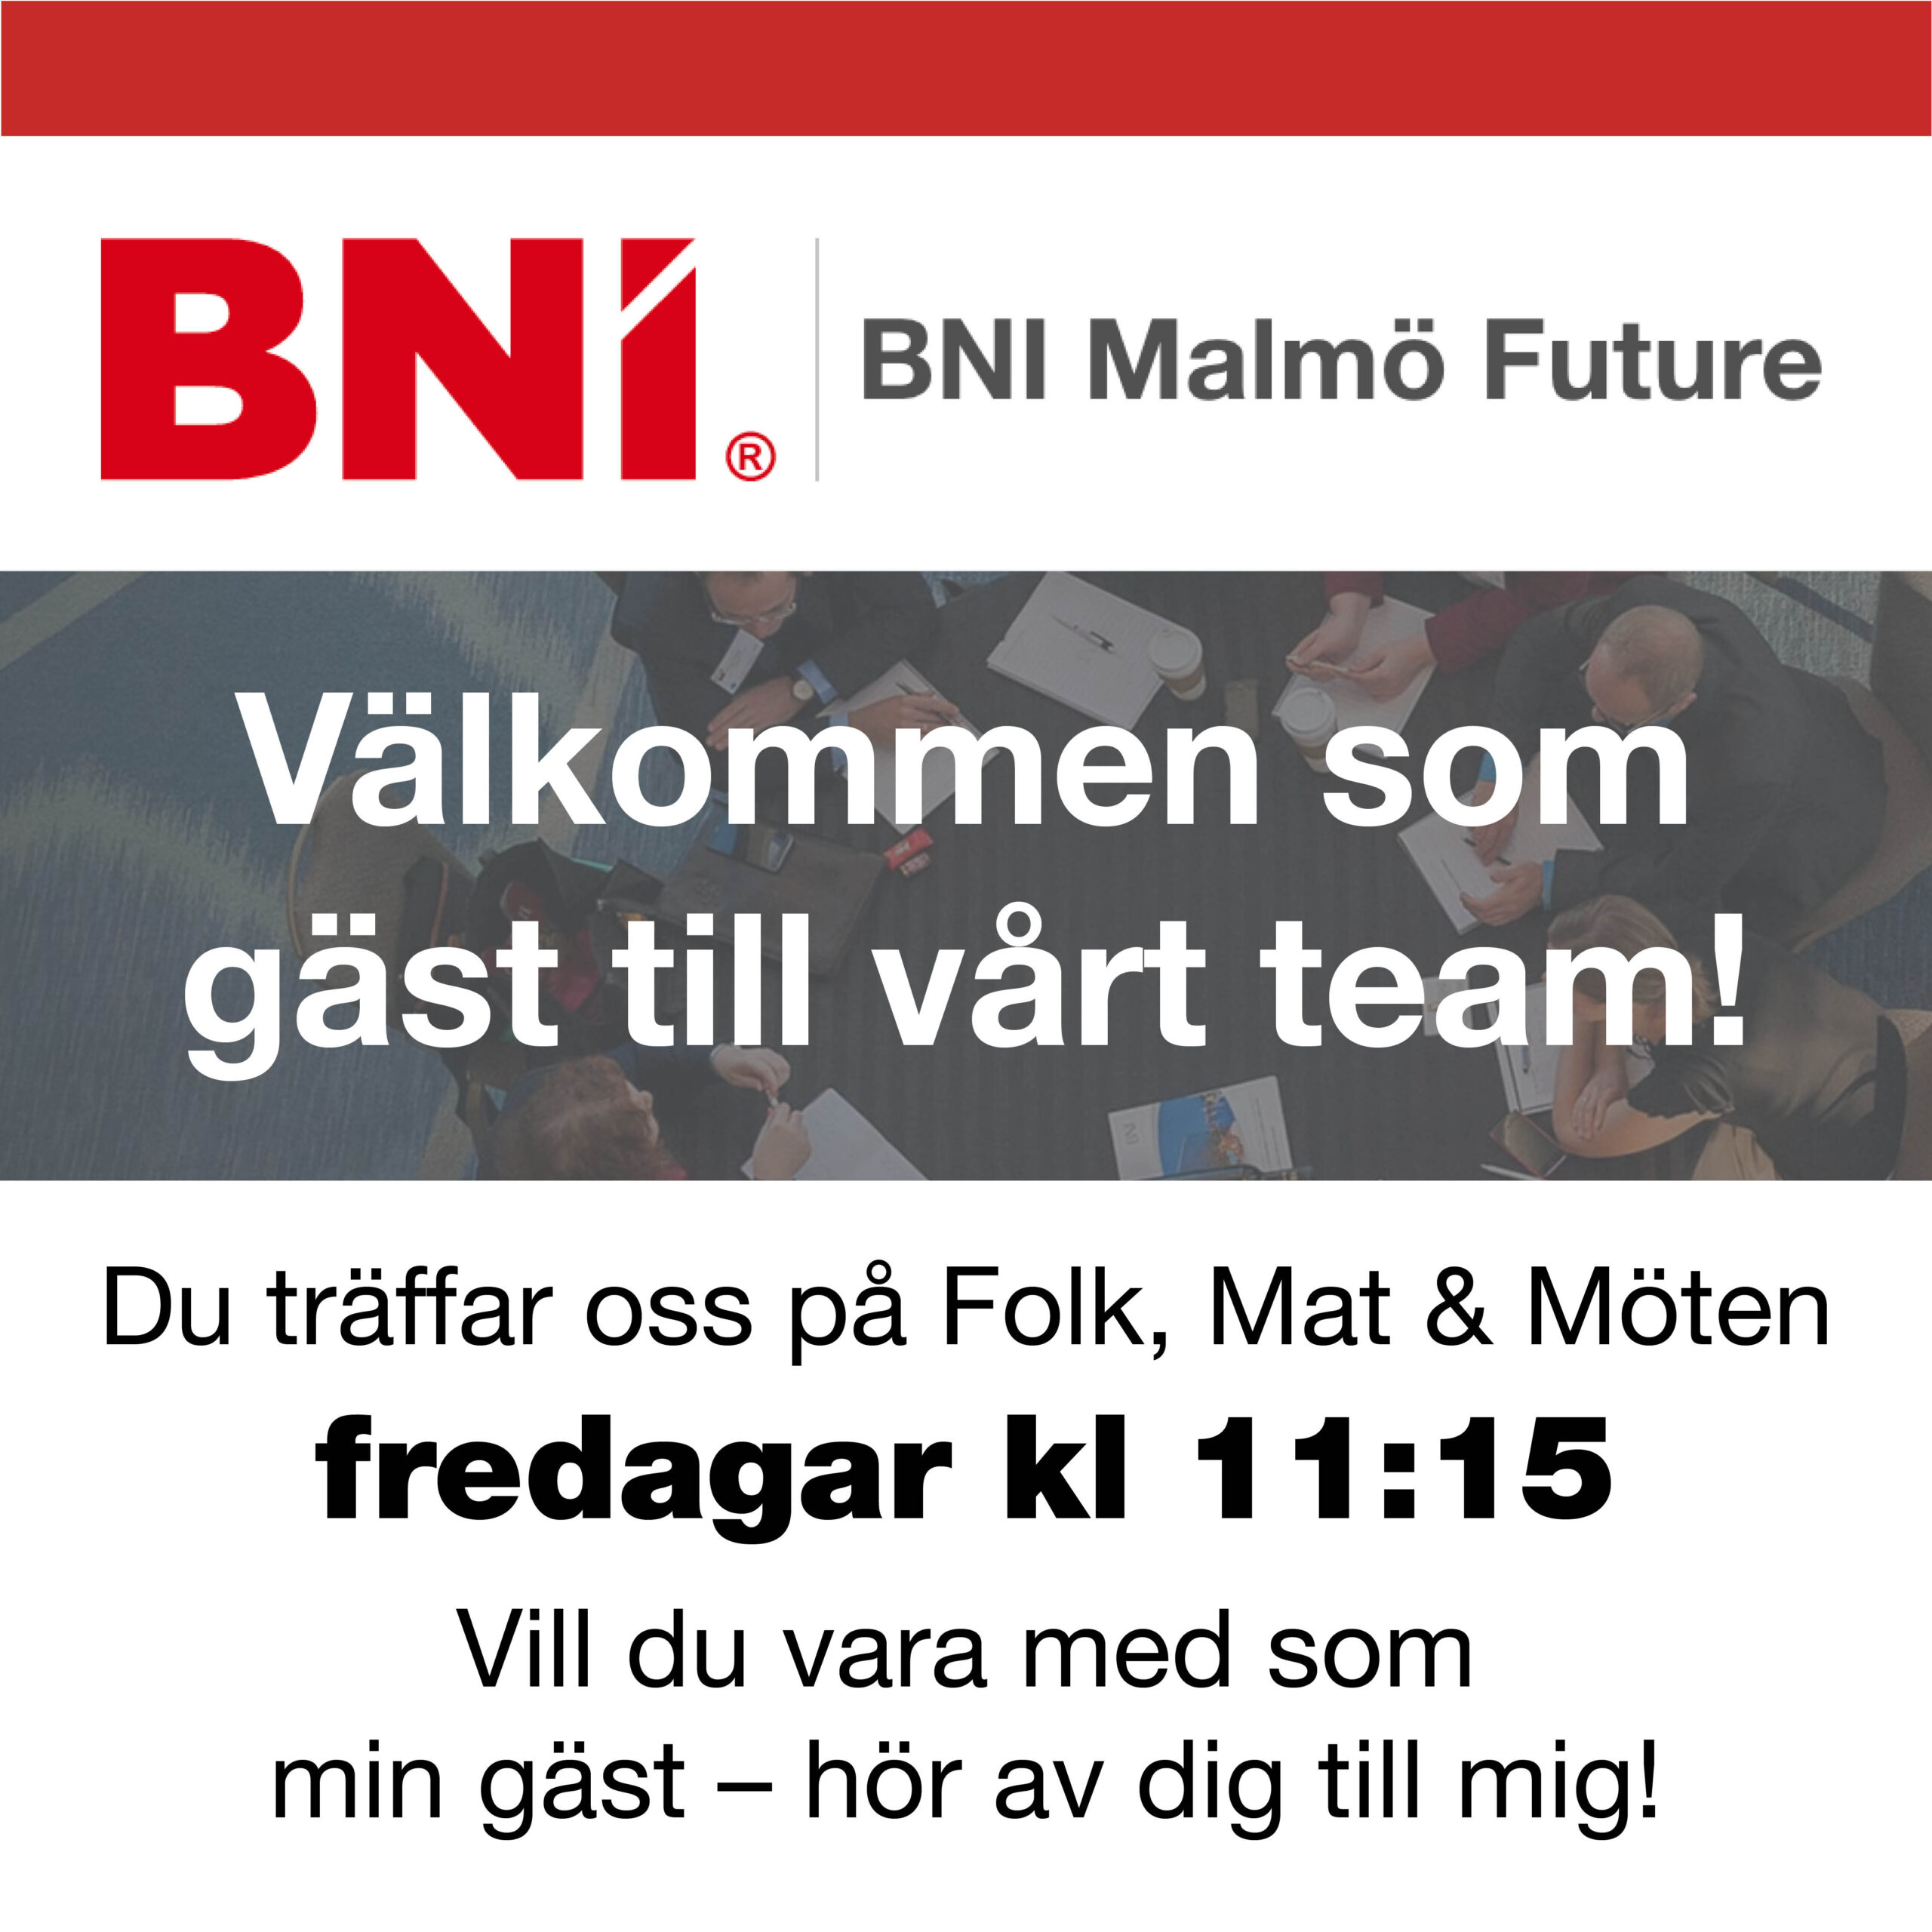 bni_future_malmo_network